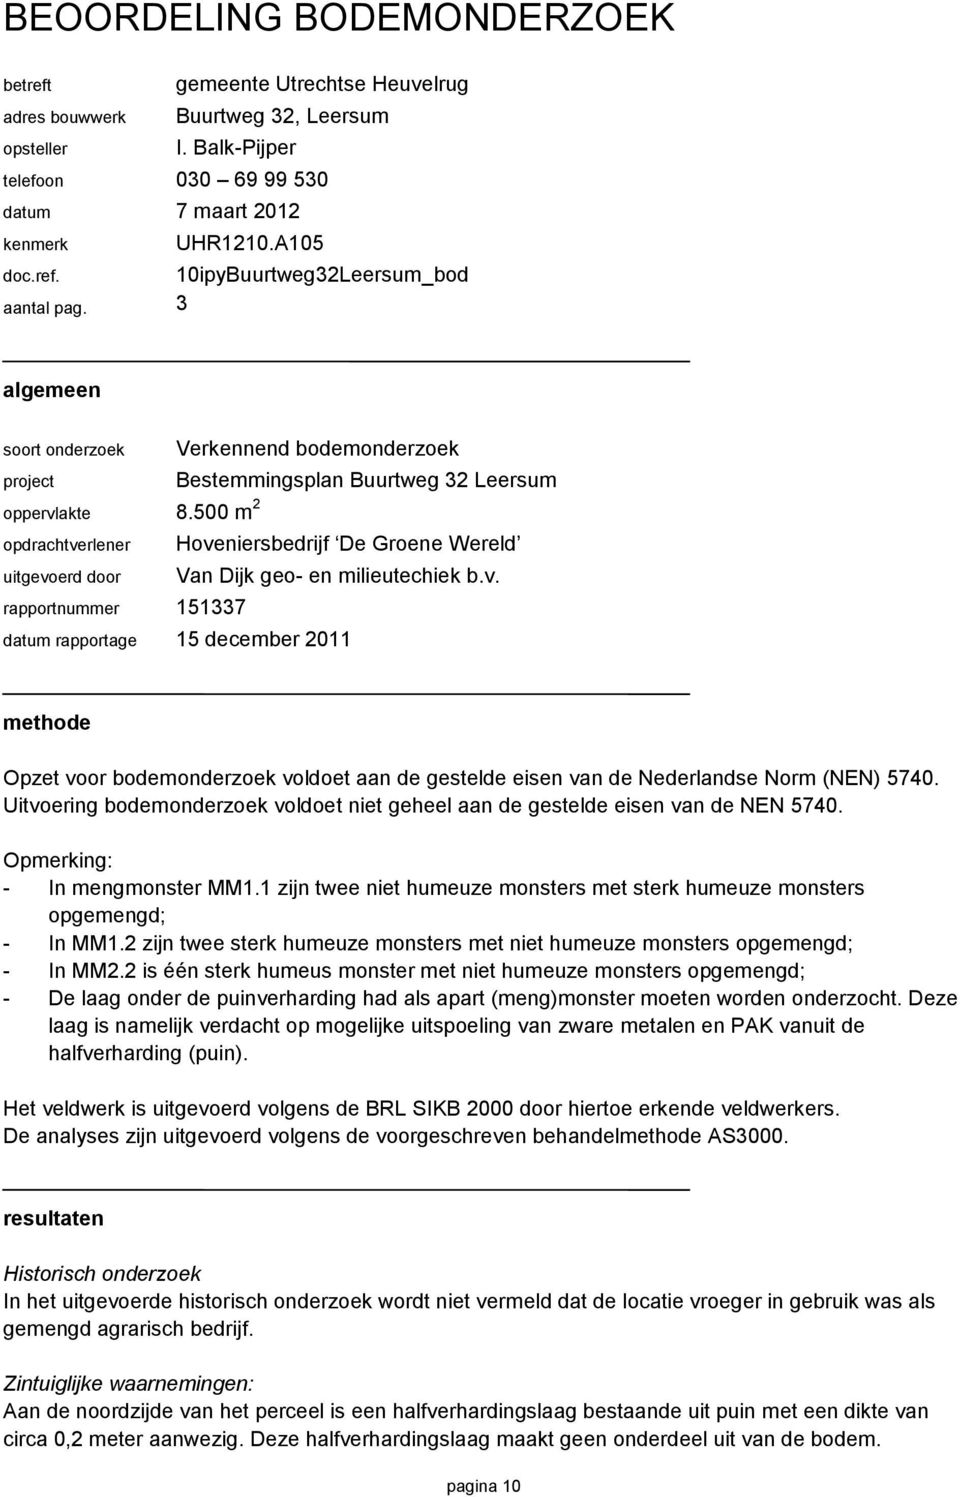 500 m 2 opdrachtverlener Hoveniersbedrijf De Groene Wereld uitgevoerd door Van Dijk geo- en milieutechiek b.v. rapportnummer 151337 datum rapportage 15 december 2011 methode Opzet voor bodemonderzoek voldoet aan de gestelde eisen van de Nederlandse Norm (NEN) 5740.